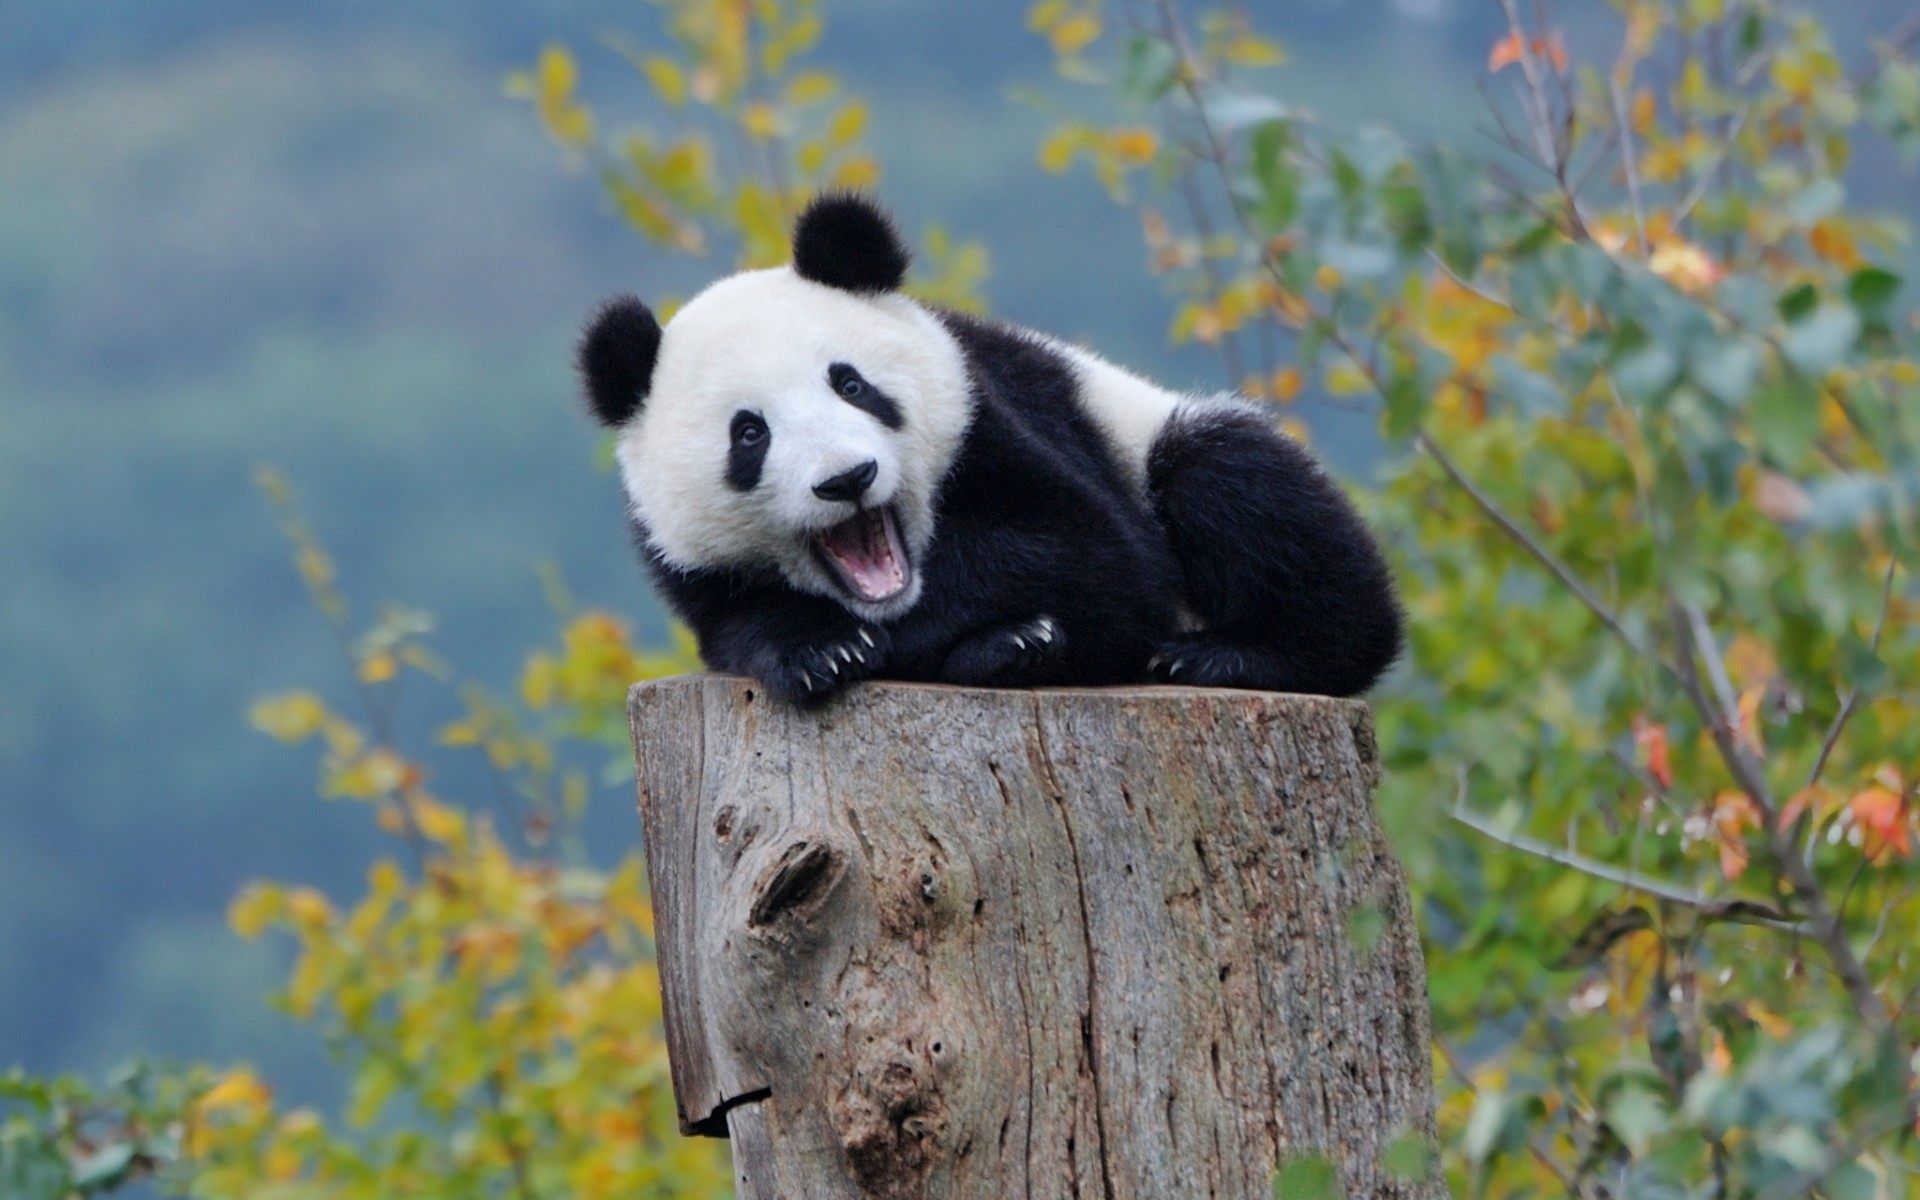 Cute Panda Wallpaper